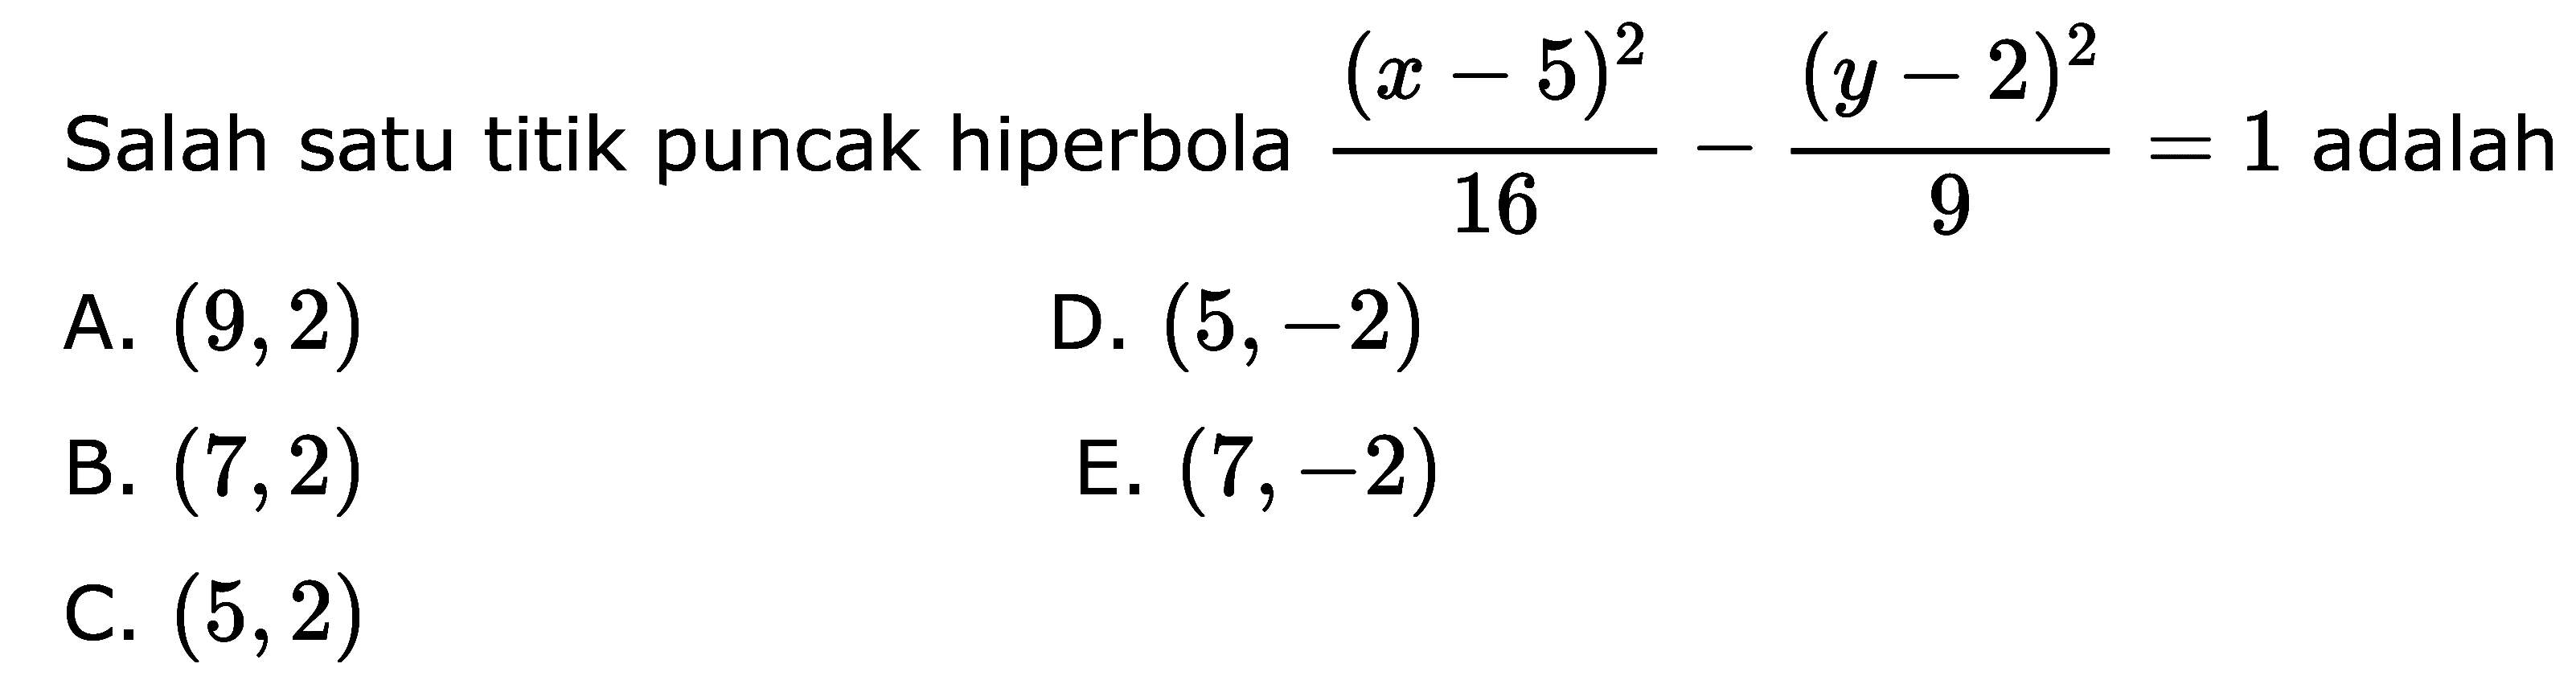 Salah satu titik puncak hiperbola (x-5)^2/16-(y-2)^2/9=1 adalah